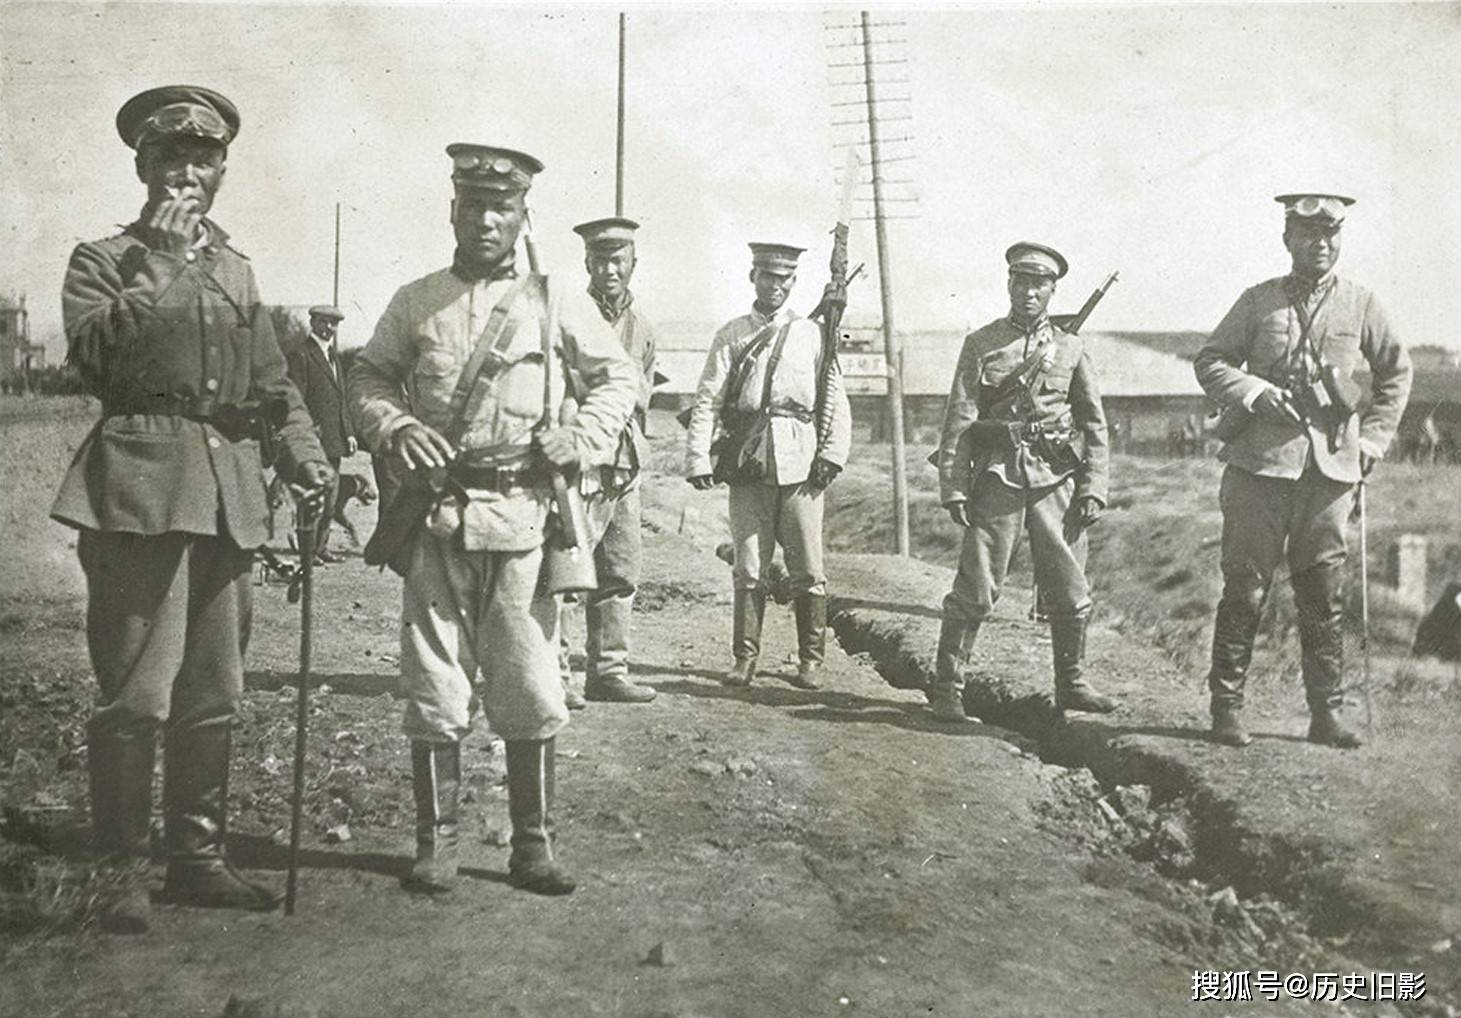 1911年武昌起义中的清军旧照,清军占领汉口火车站